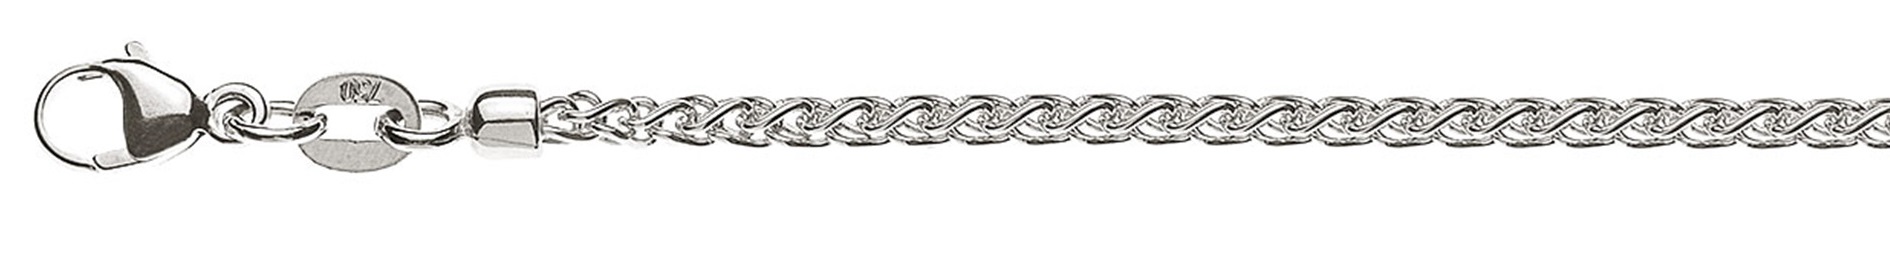 AURONOS Prestige Necklace white gold 18K cable chain 60cm 2.15mm